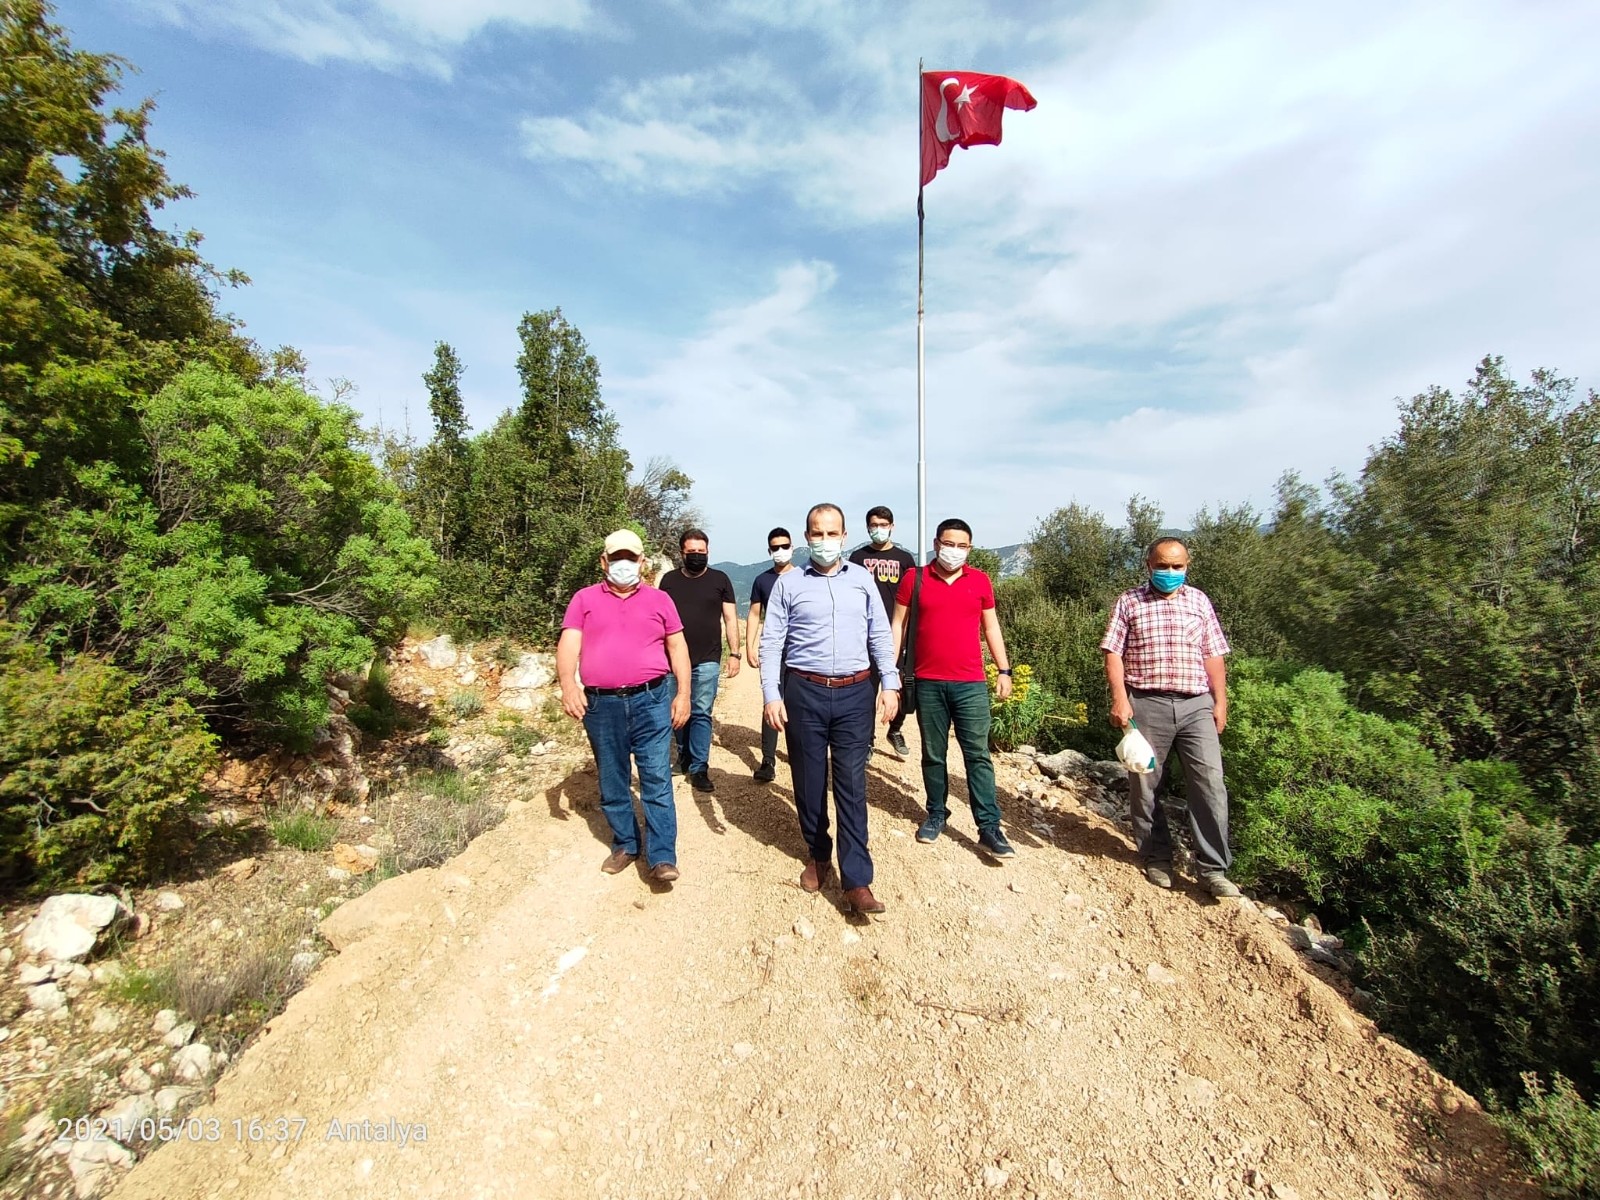 Rüzgar sebebiyle kopan Türk Bayrağı yenisiyle değiştirildi